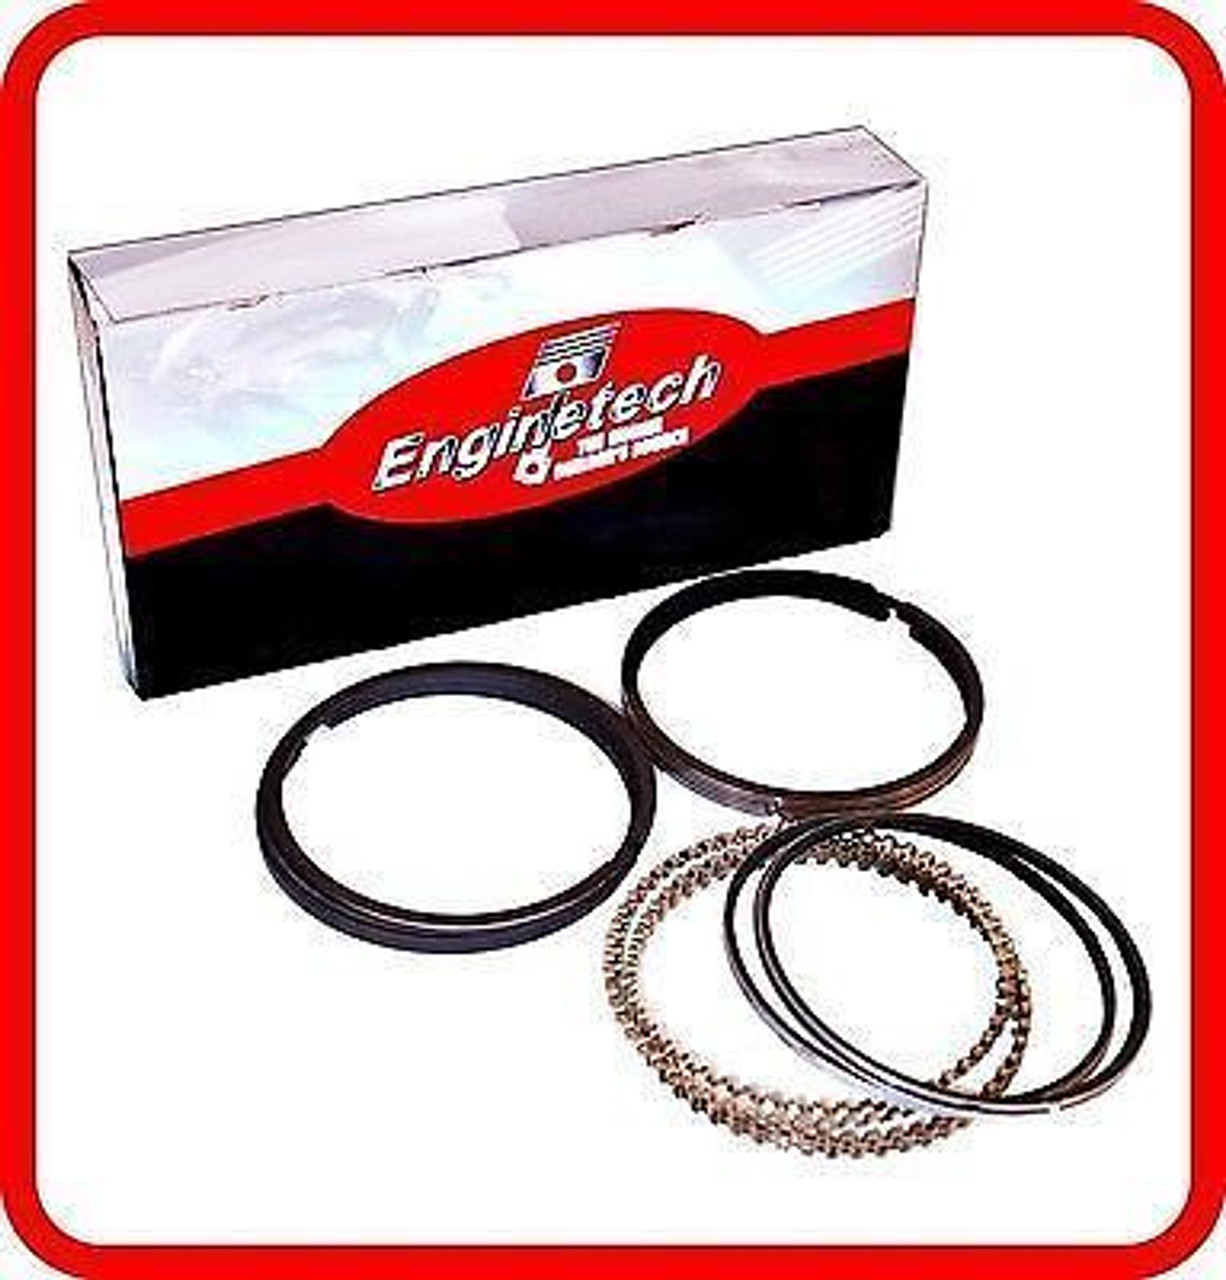 Engine Piston Ring Set - Kit Part - R34056